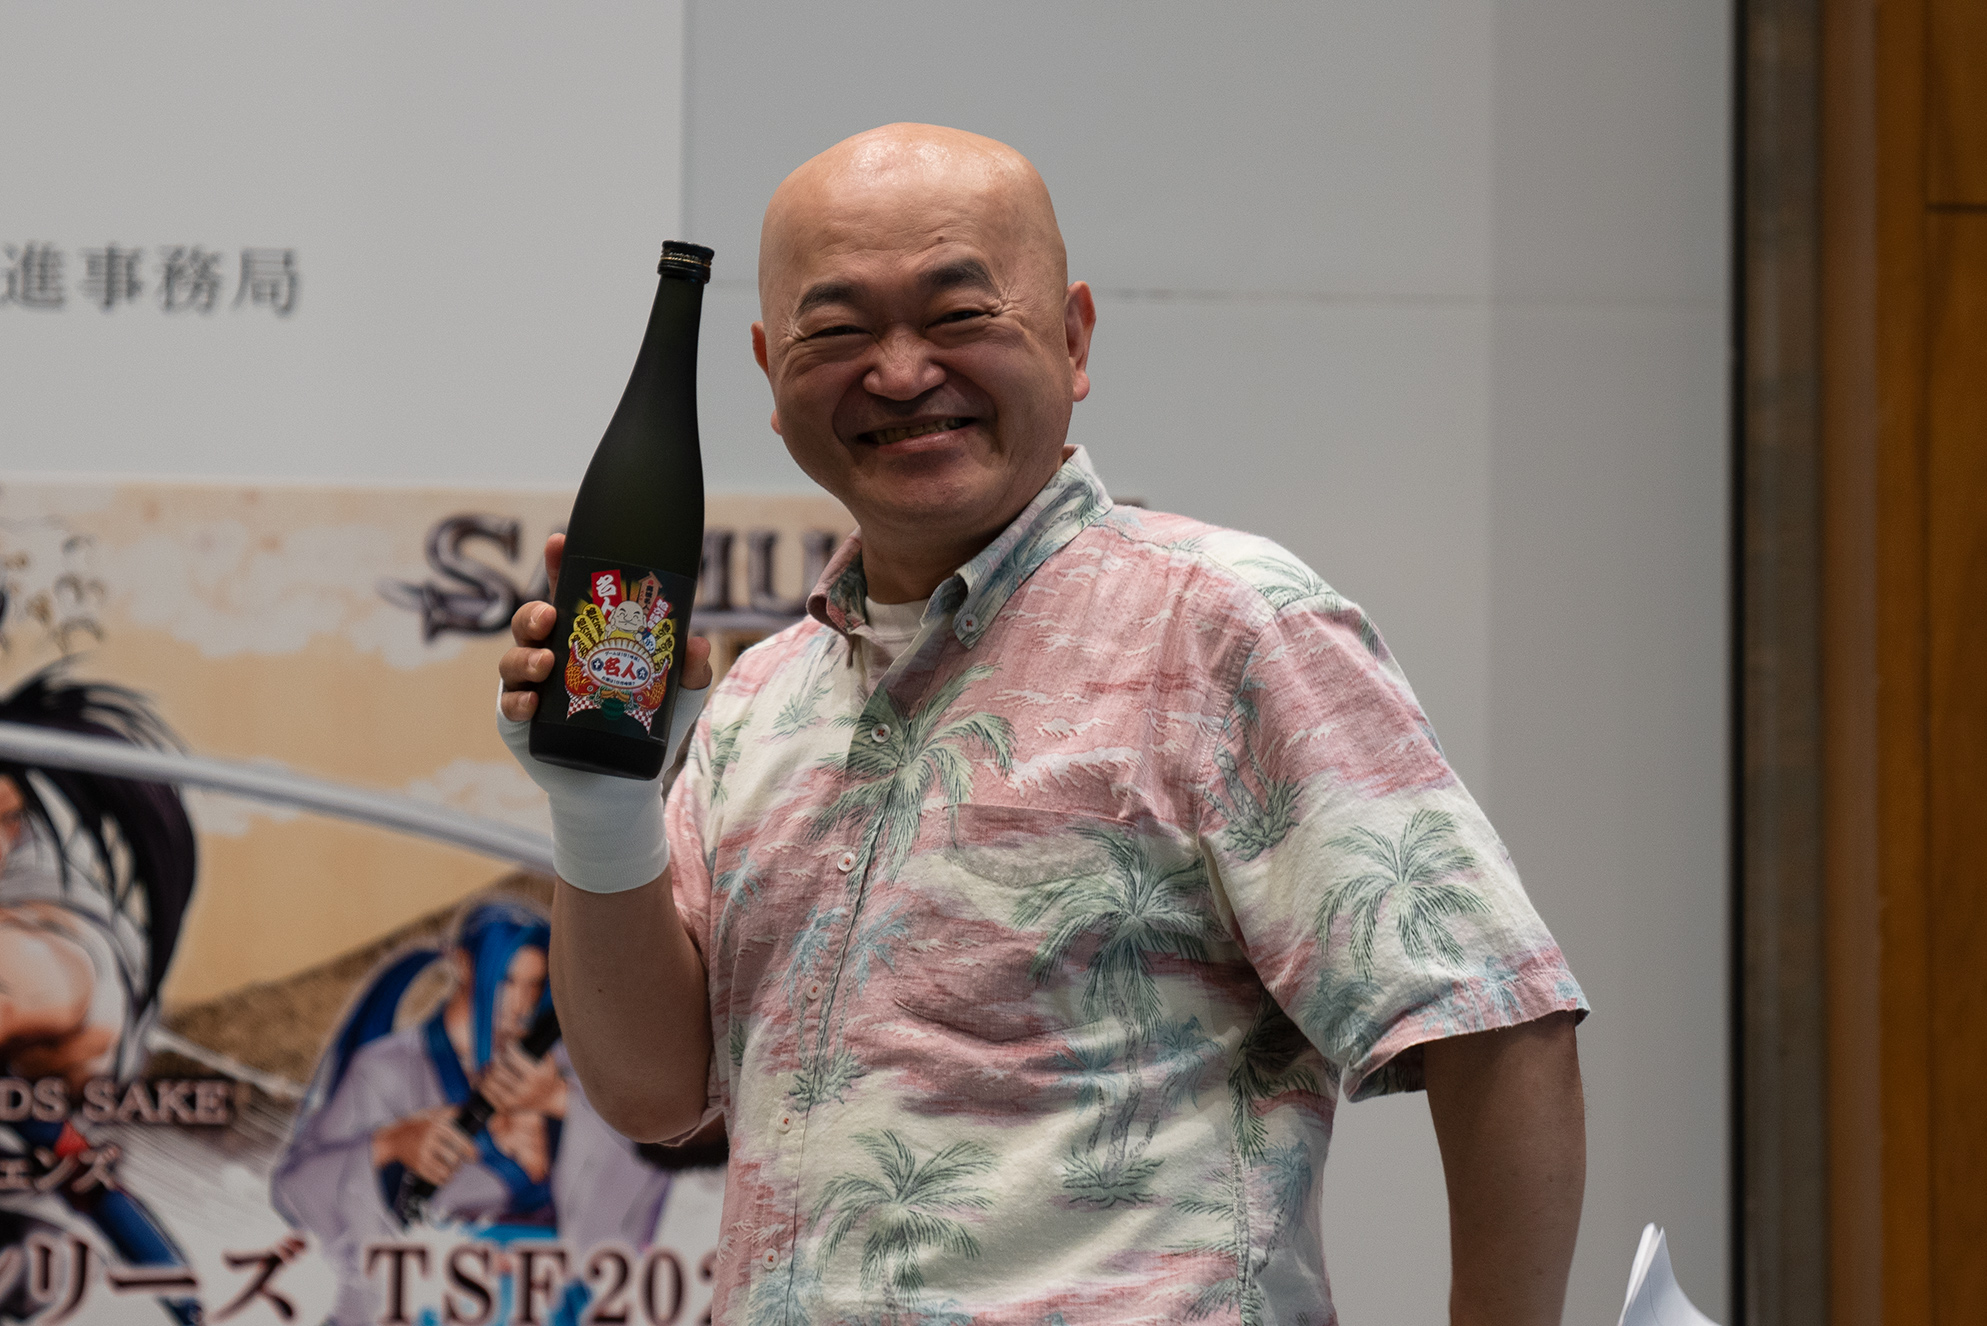 高橋名人や 戦国basara 上杉謙信などゲーム関連の日本酒が発売へ 音楽 ゲーム コスプレが集まる Tokyo ニコニコニュース